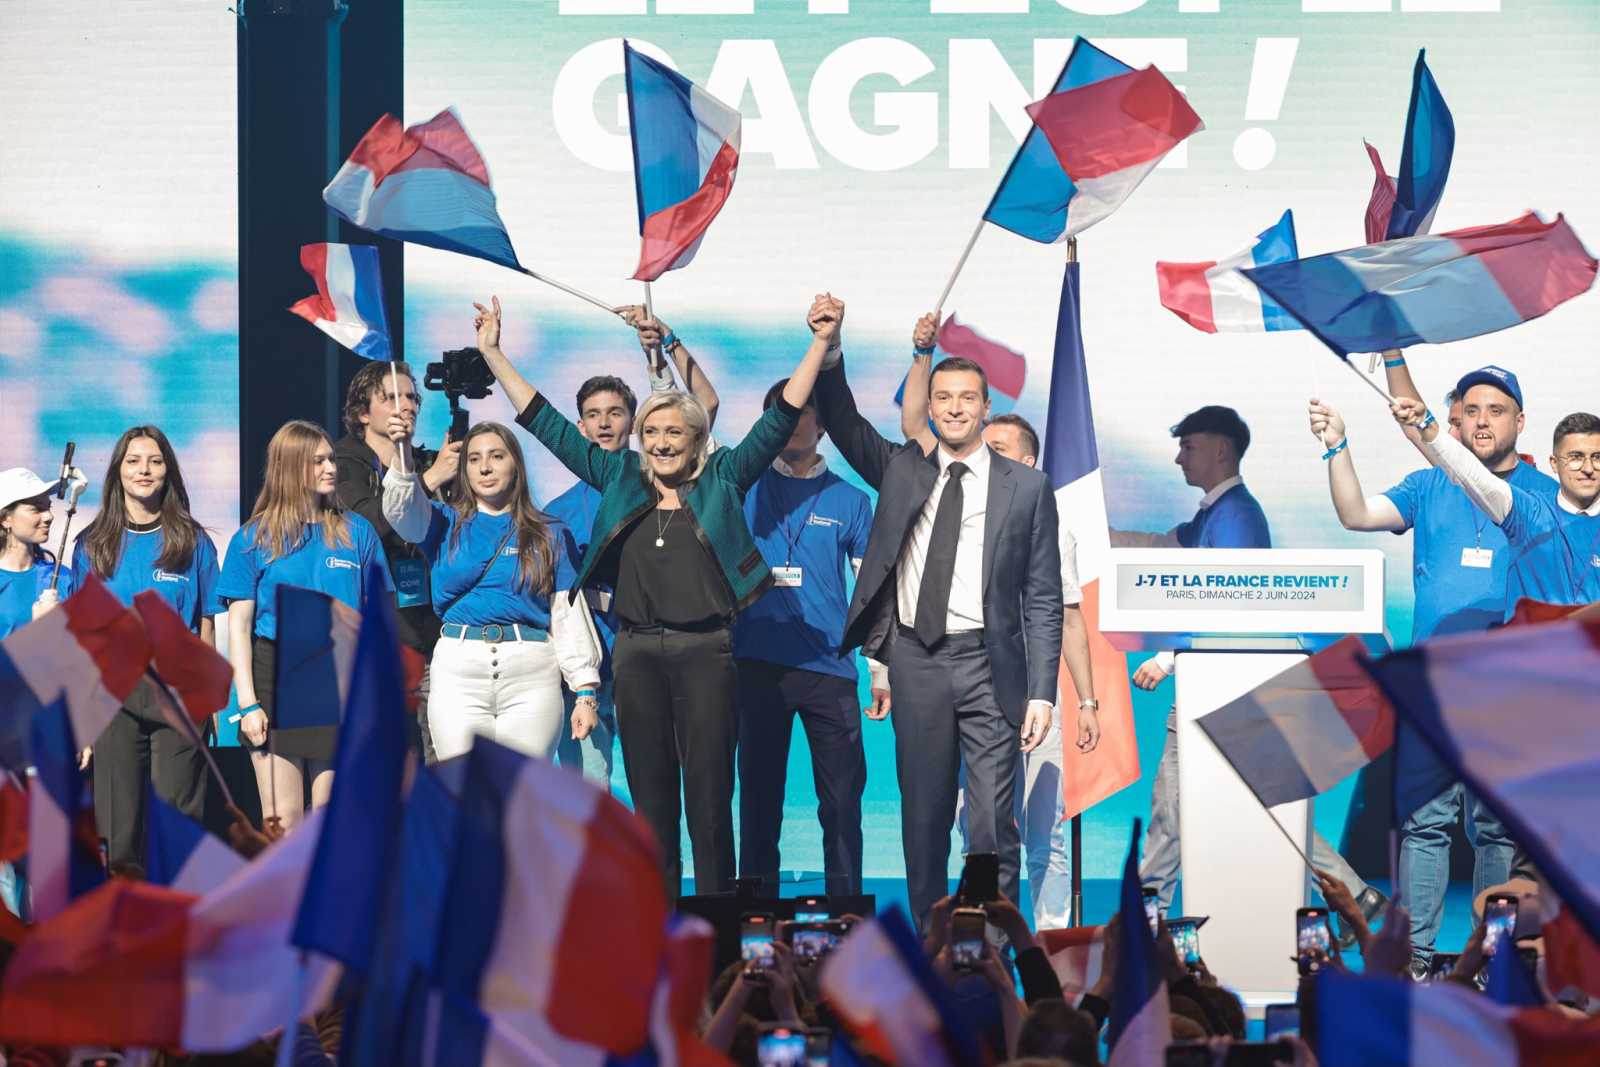 Megszerzi-e az abszolút többséget a Nemzeti Tömörülés? Fotó: Marine Le Pen Facebook oldala 